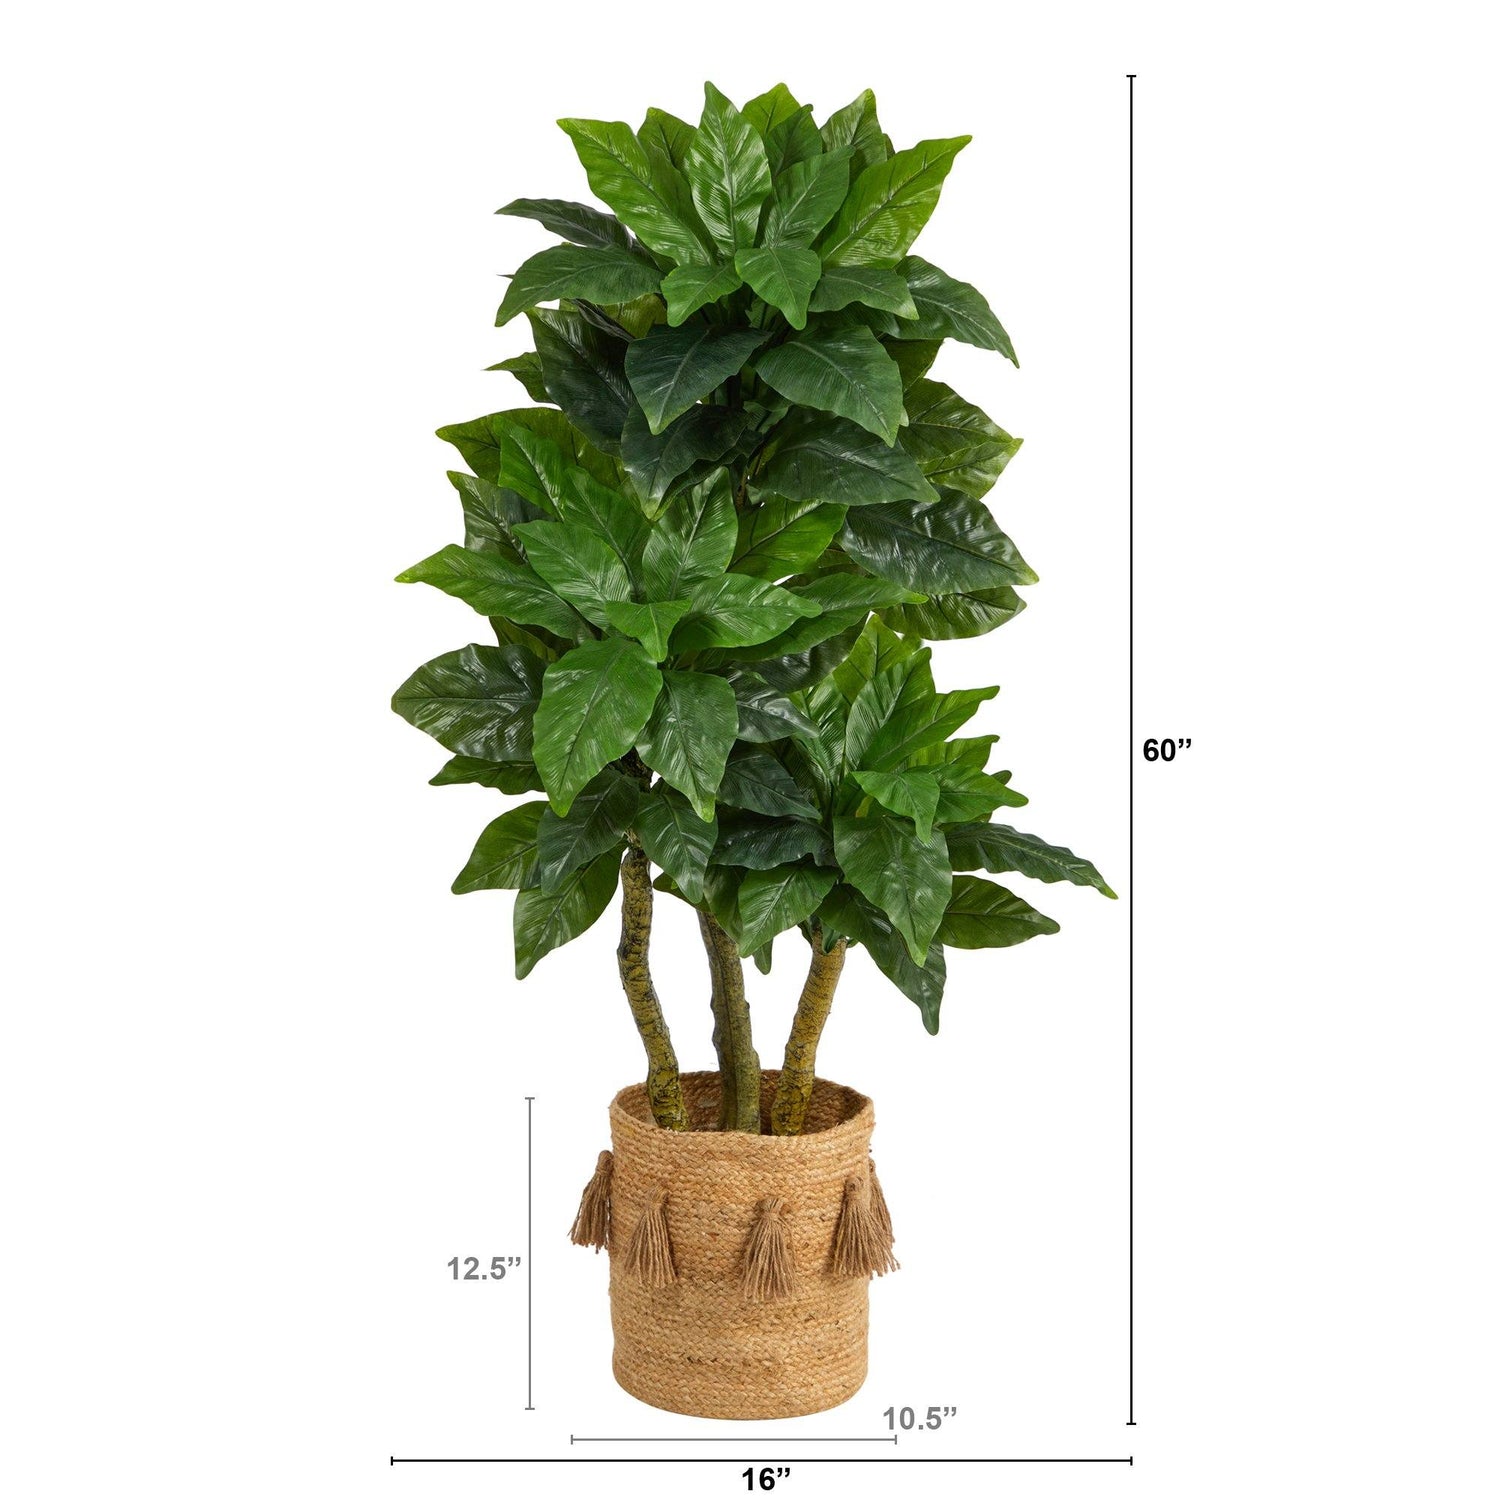 5’ Bird Nest Tree in Handmade Natural Jute Planter with Tassels UV Resistant (Indoor/Outdoor)